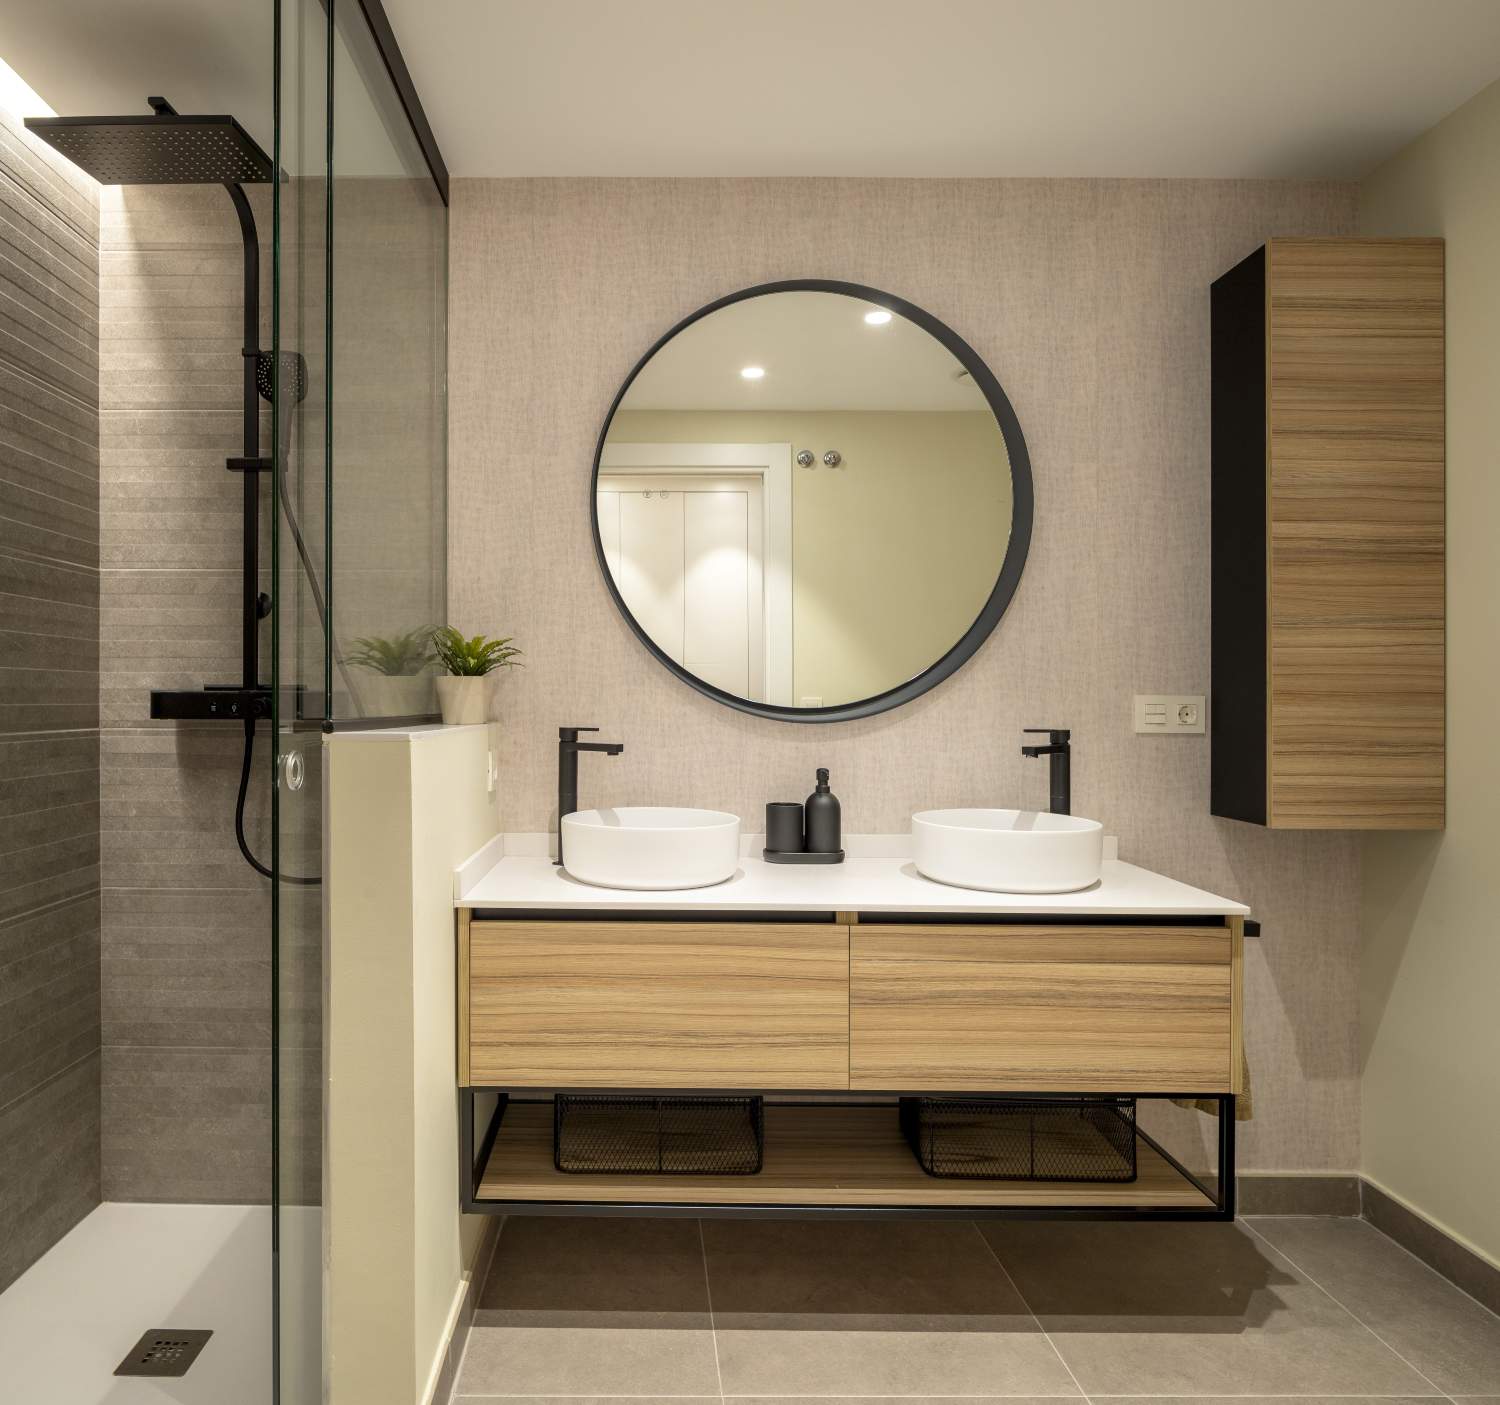 Baño moderno con espejo redondo y ducha con mampara con detalles negros.